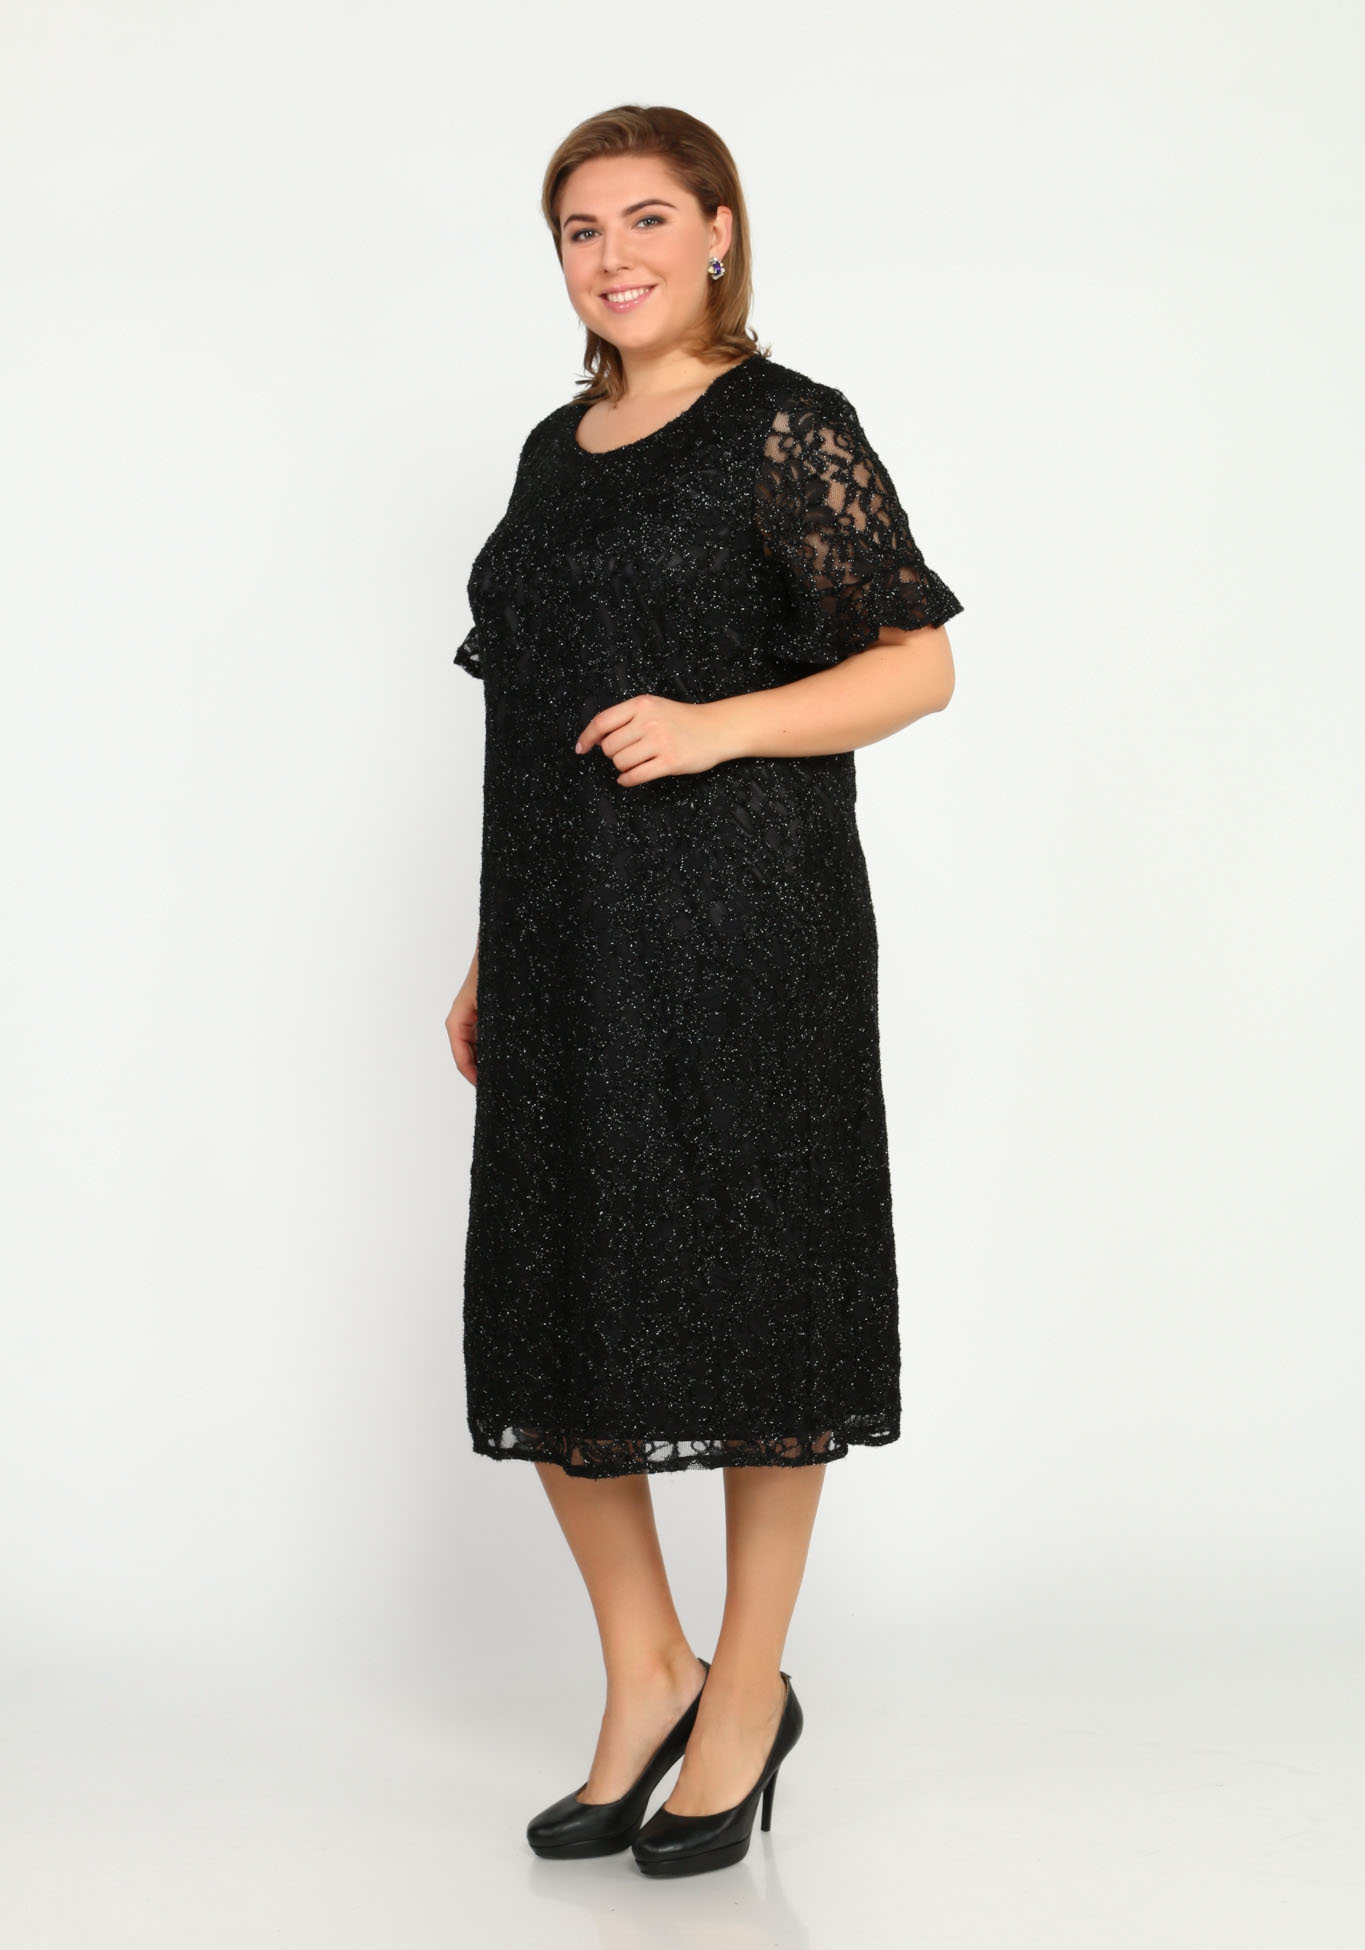 Платье с блеском и узором Bel Fiore, размер 48, цвет баклажановый - фото 3